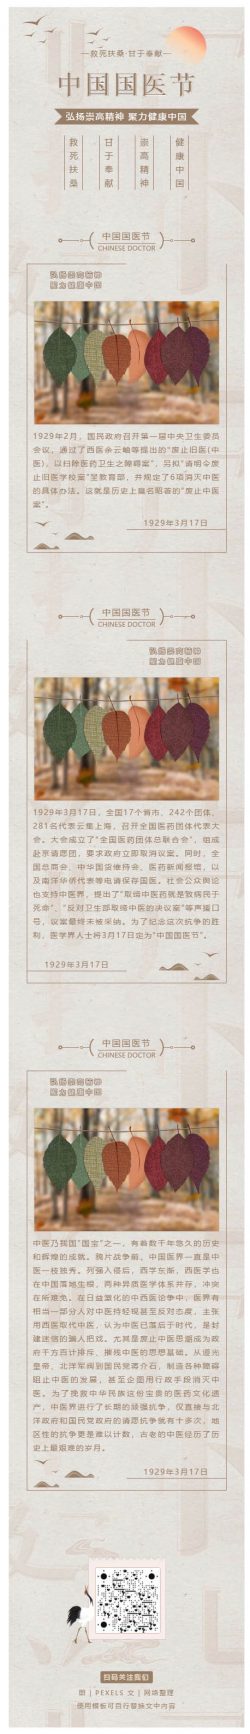 中国国医节中医中国风图文模板水墨传统微信推文素材